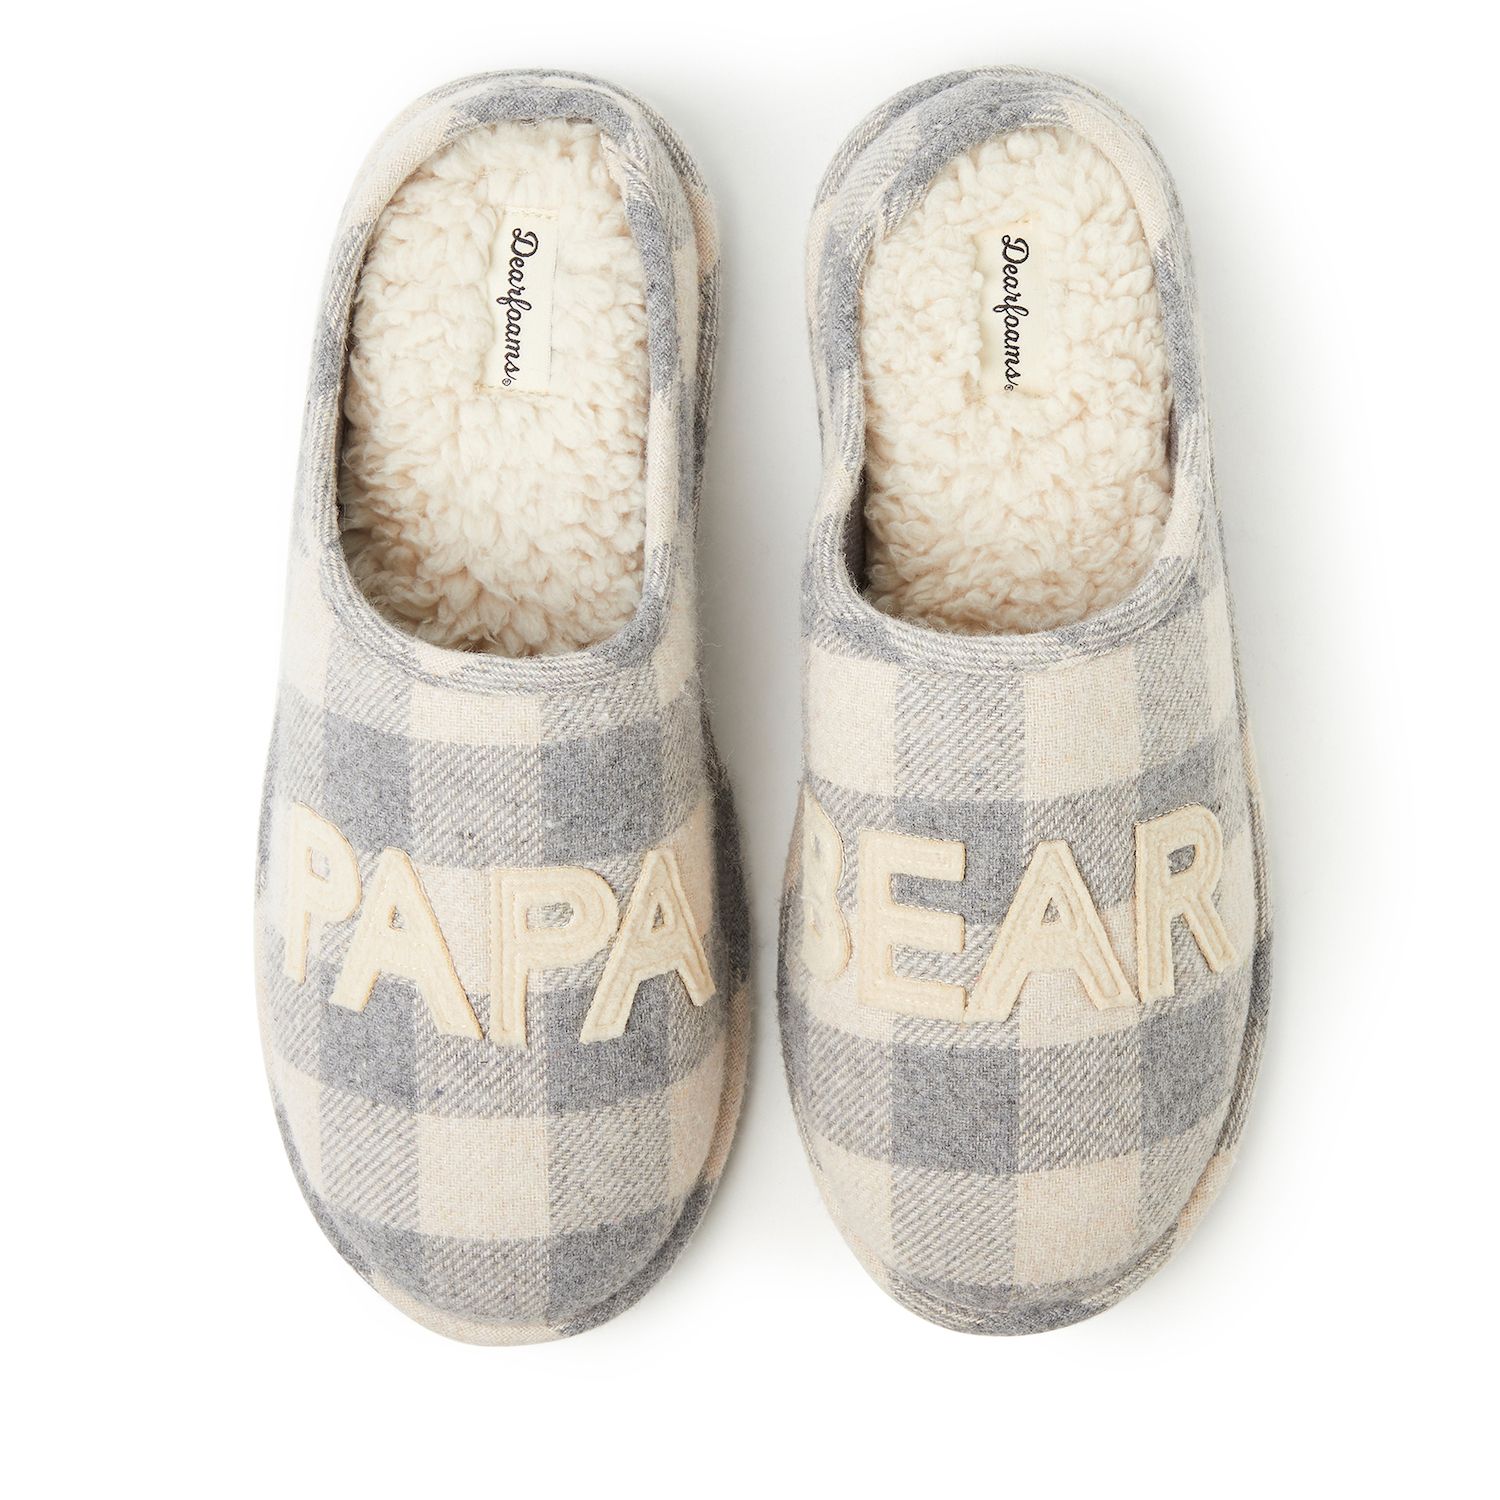 kohls bear slippers